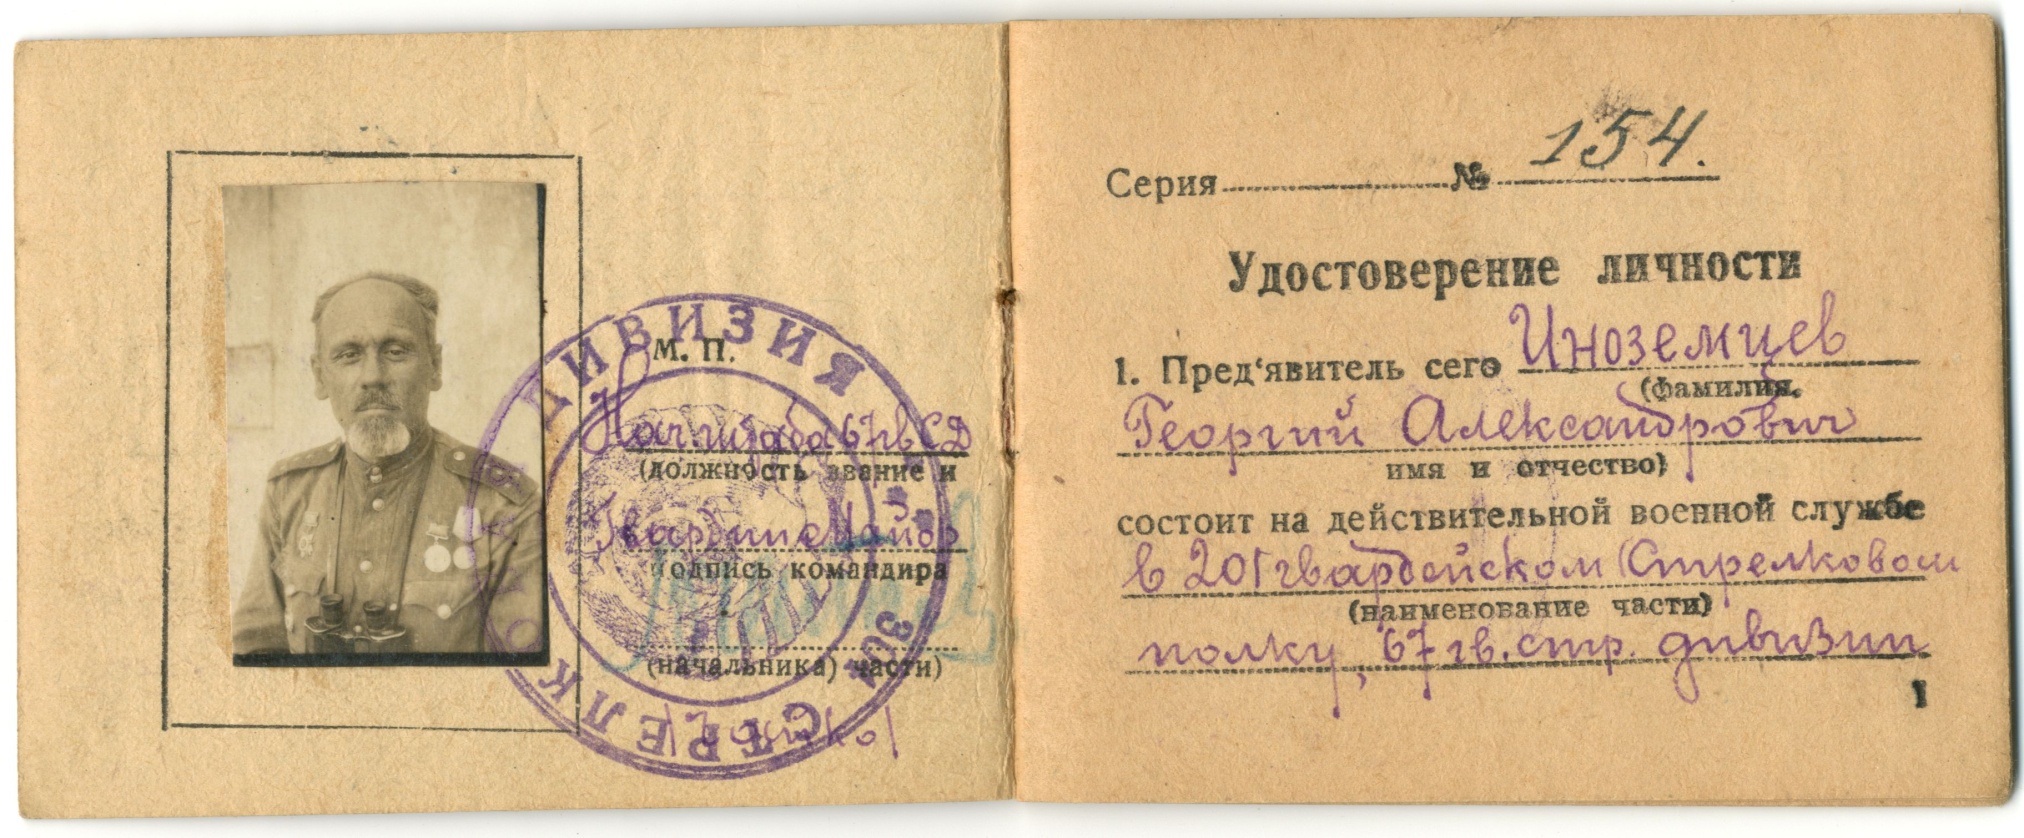 Удостоверение гвардии капитана 20-го Гвардейского стрелкового полка, 67-й Гвардейской стрелковой дивизии Иноземцева Г.А. 1943 год.